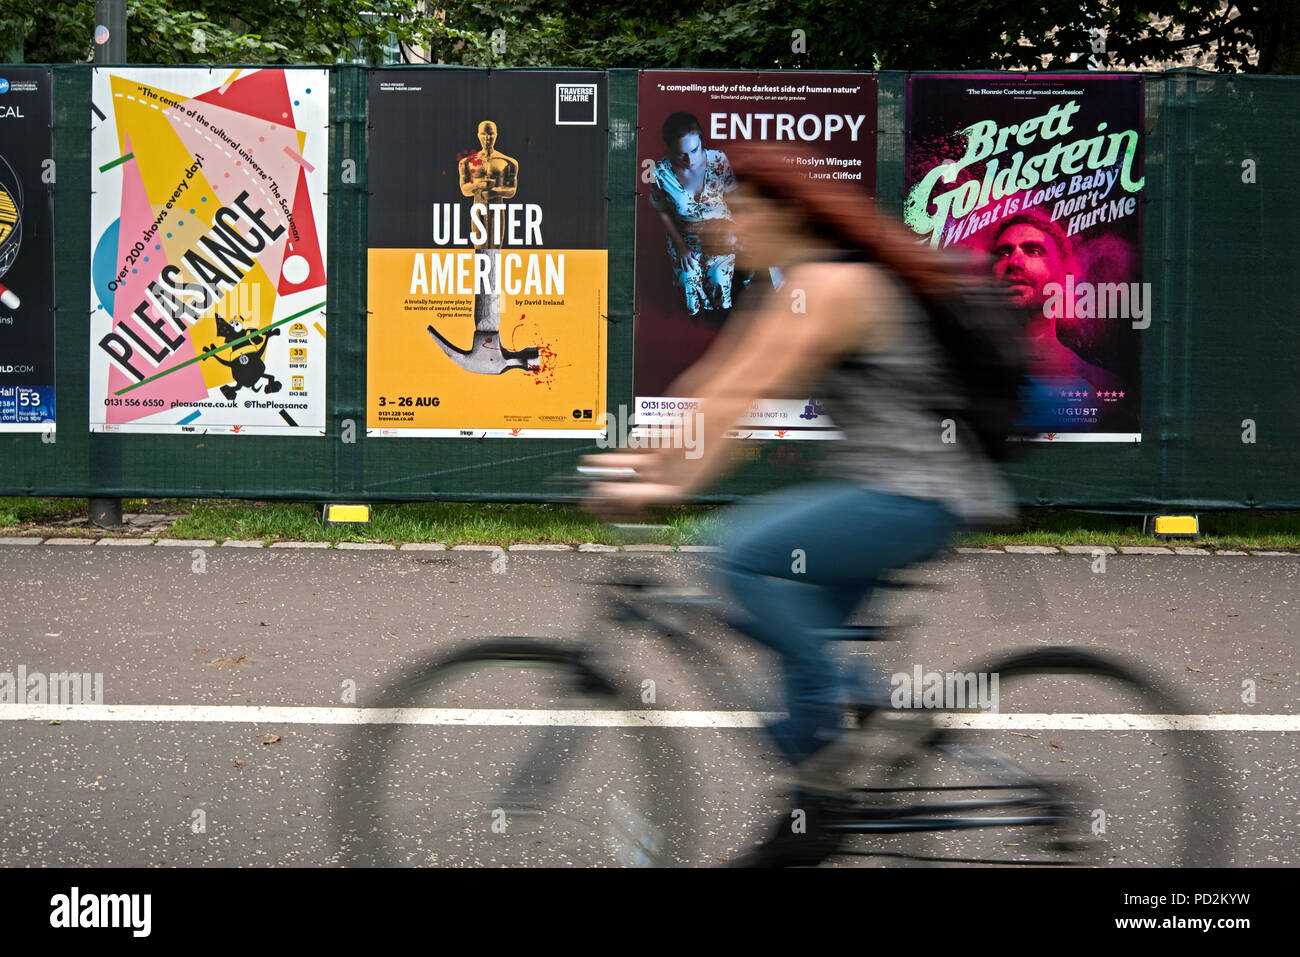 Un cycliste féminin rides par des affiches publicitaires pour Edinburgh Fringe Festival montre dans les prés, Édimbourg, Écosse, Royaume-Uni. Banque D'Images